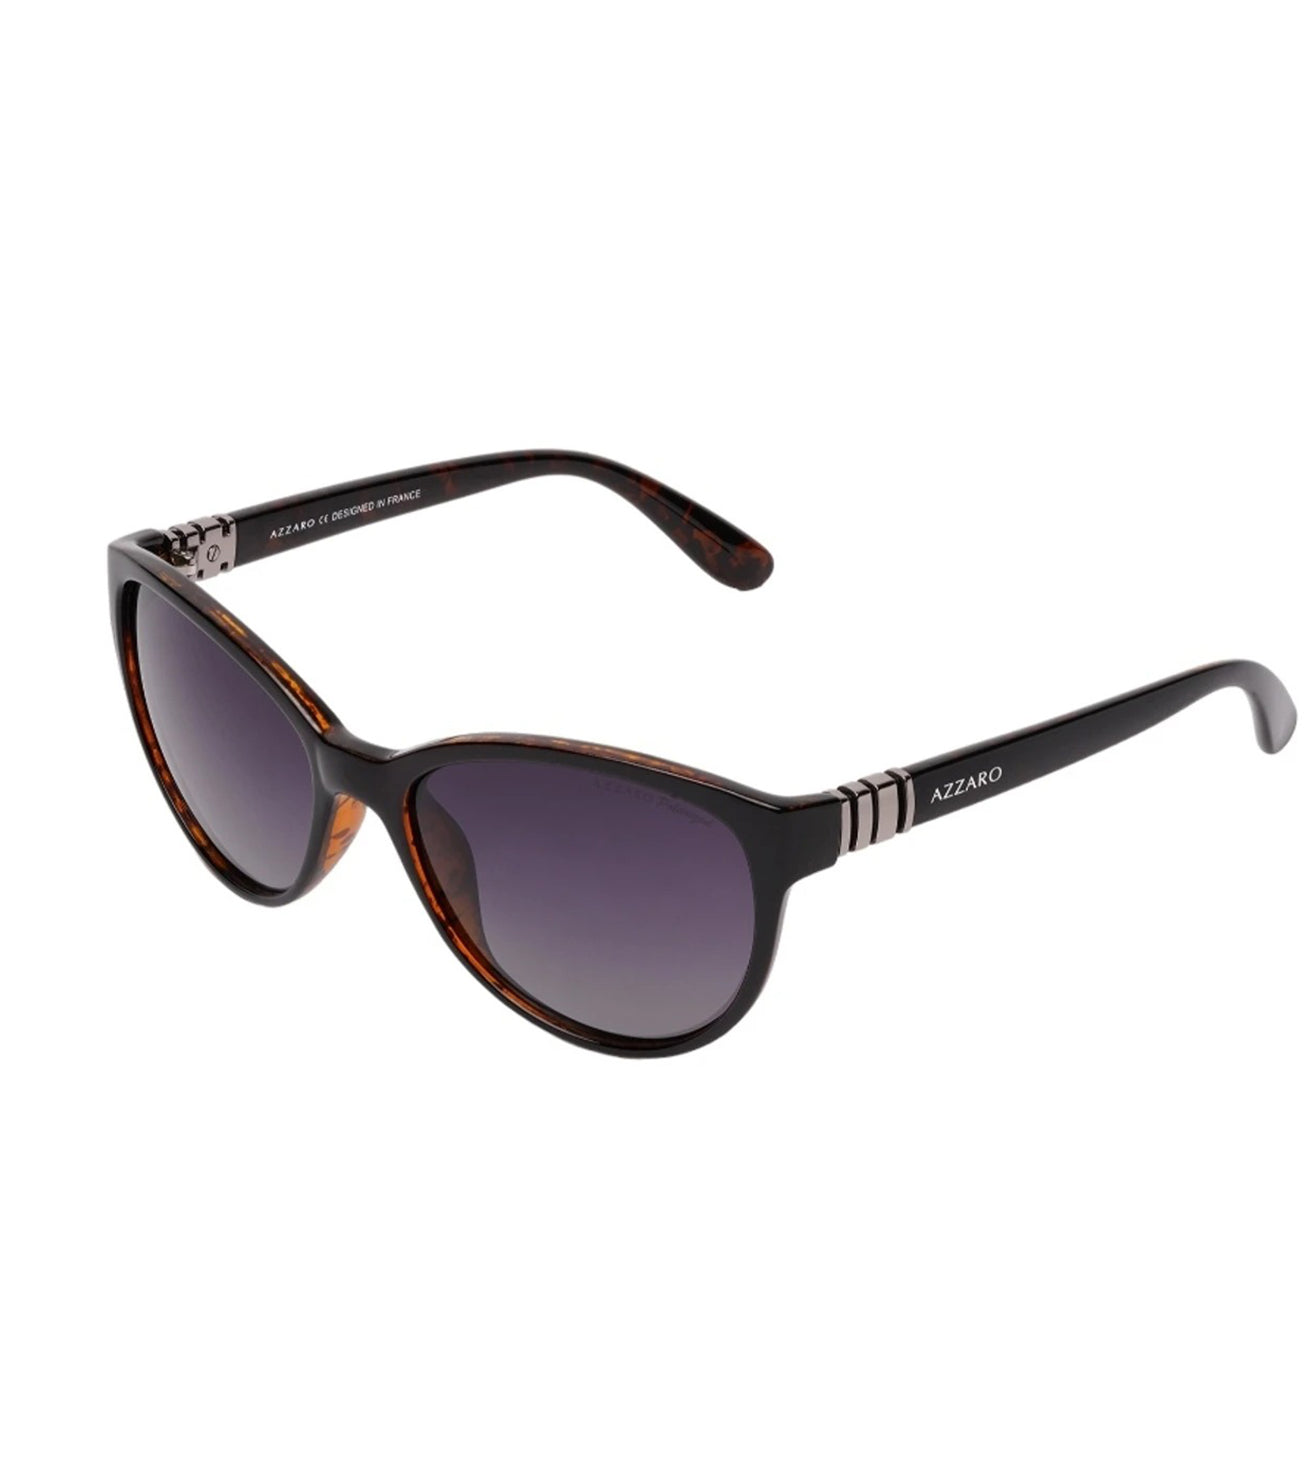 Azzaro Women's Brown Cat-eye Sunglasses